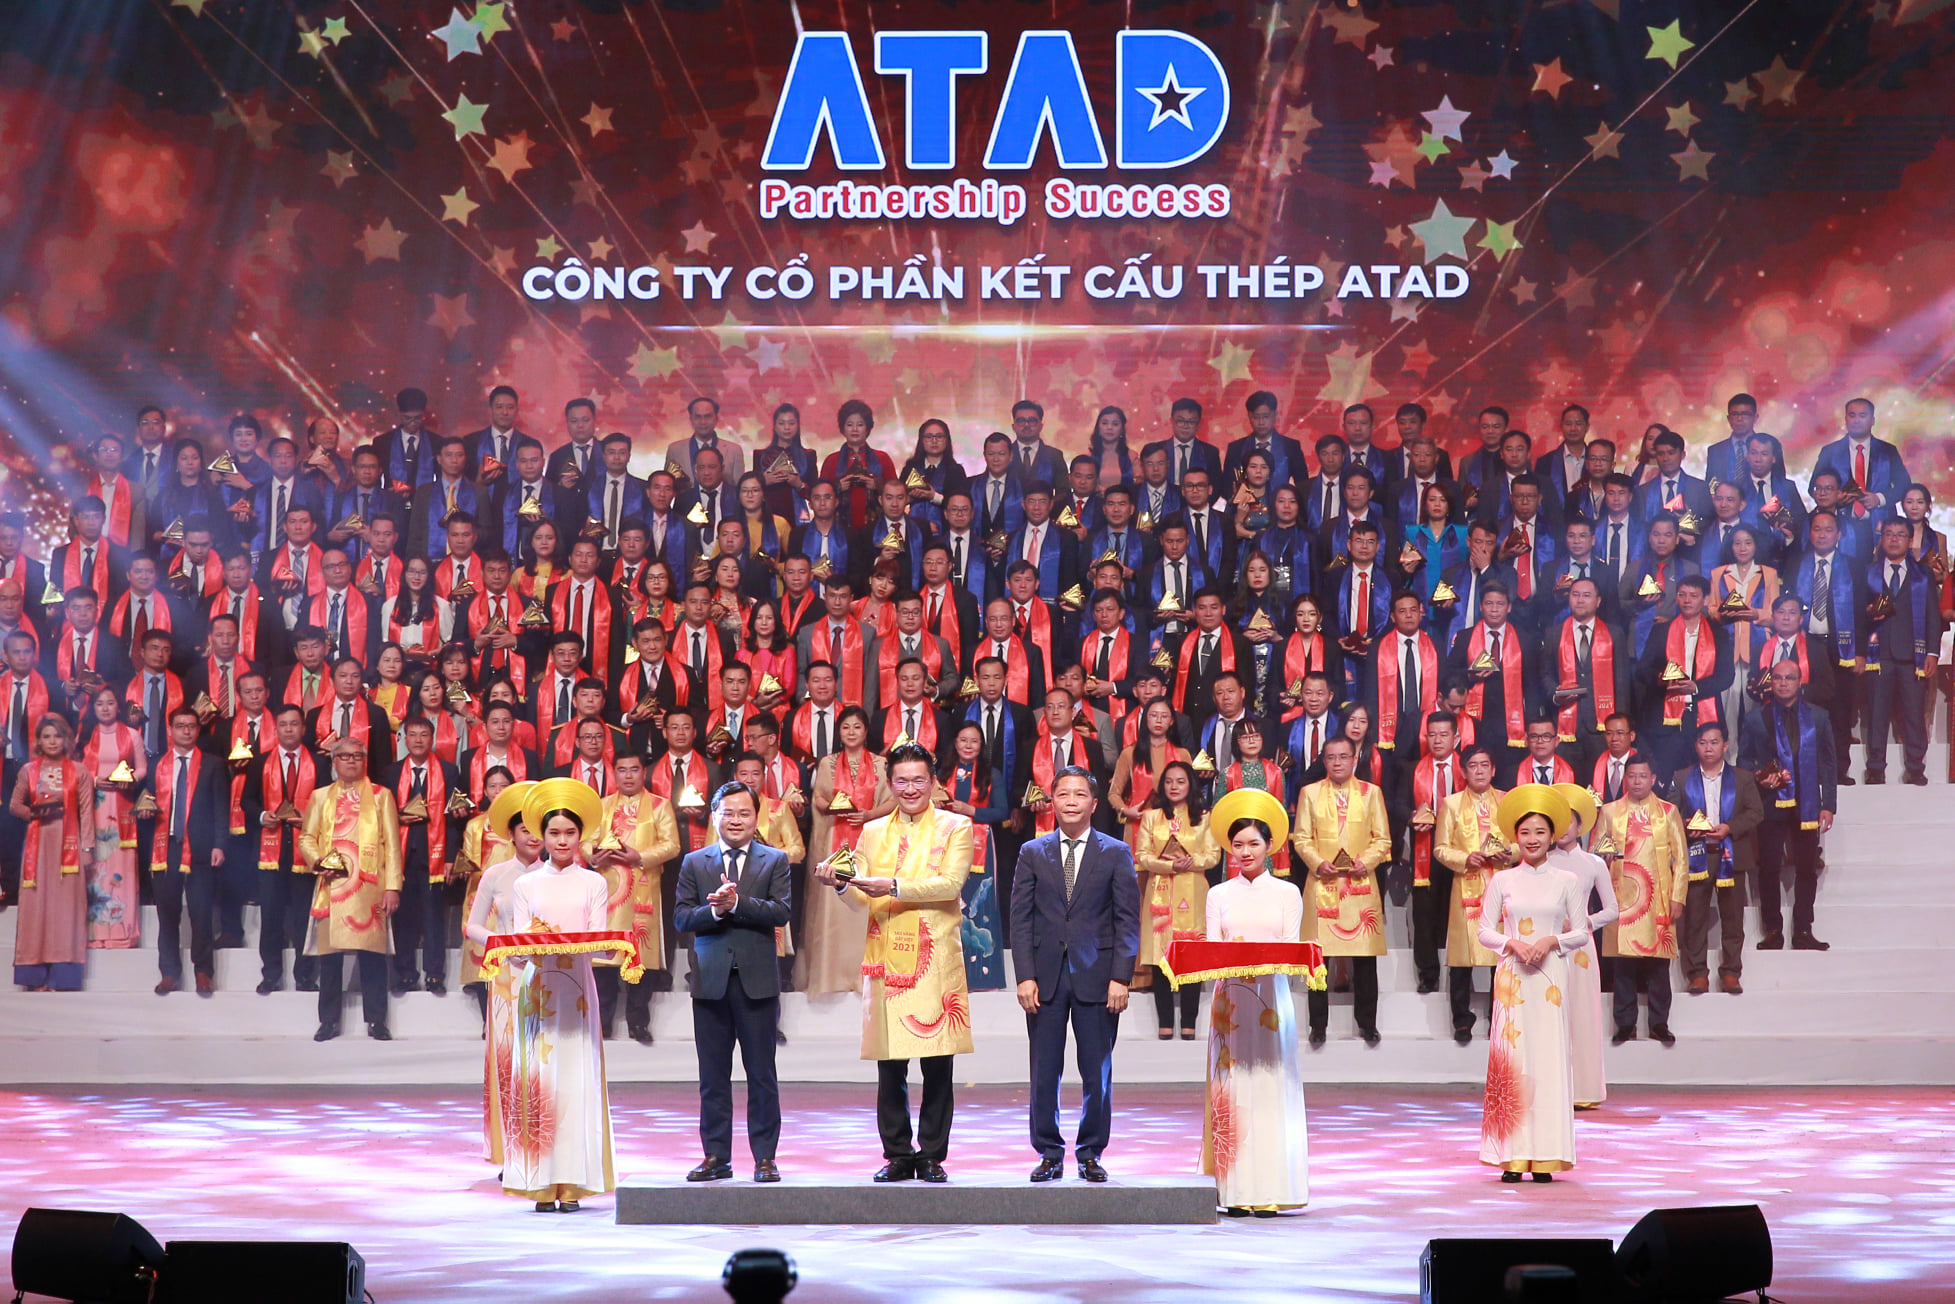 ATAD là doanh nghiệp dẫn đầu ngành Kết cấu thép tại Việt Nam, ATAD đã thực hiện hơn 3.500 công trình trên hơn 40 quốc gia, vùng lãnh thổ. ATAD phấn đấu trở thành công ty Kết cấu thép hàng đầu khu vực Đông Nam Á và là công ty toàn cầu trong lĩnh vực này.